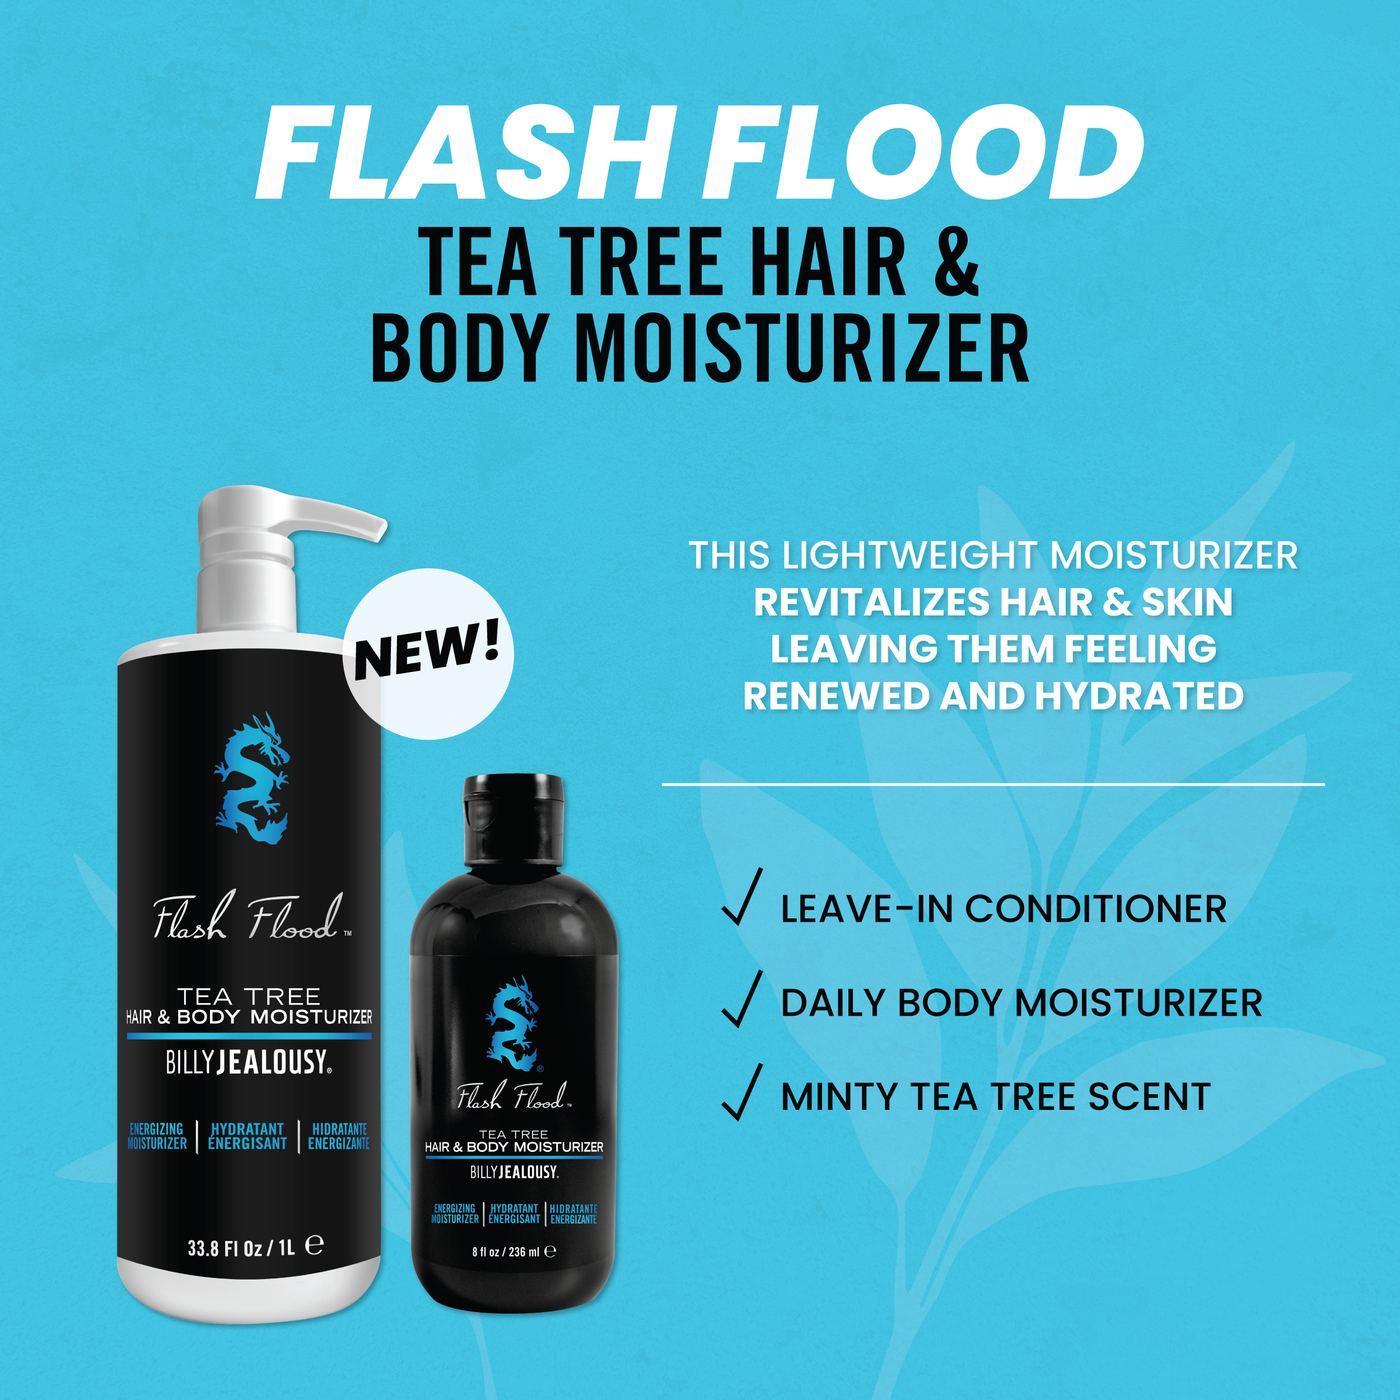 Flash Flood Tea Tree Hair and Body Moisturizer